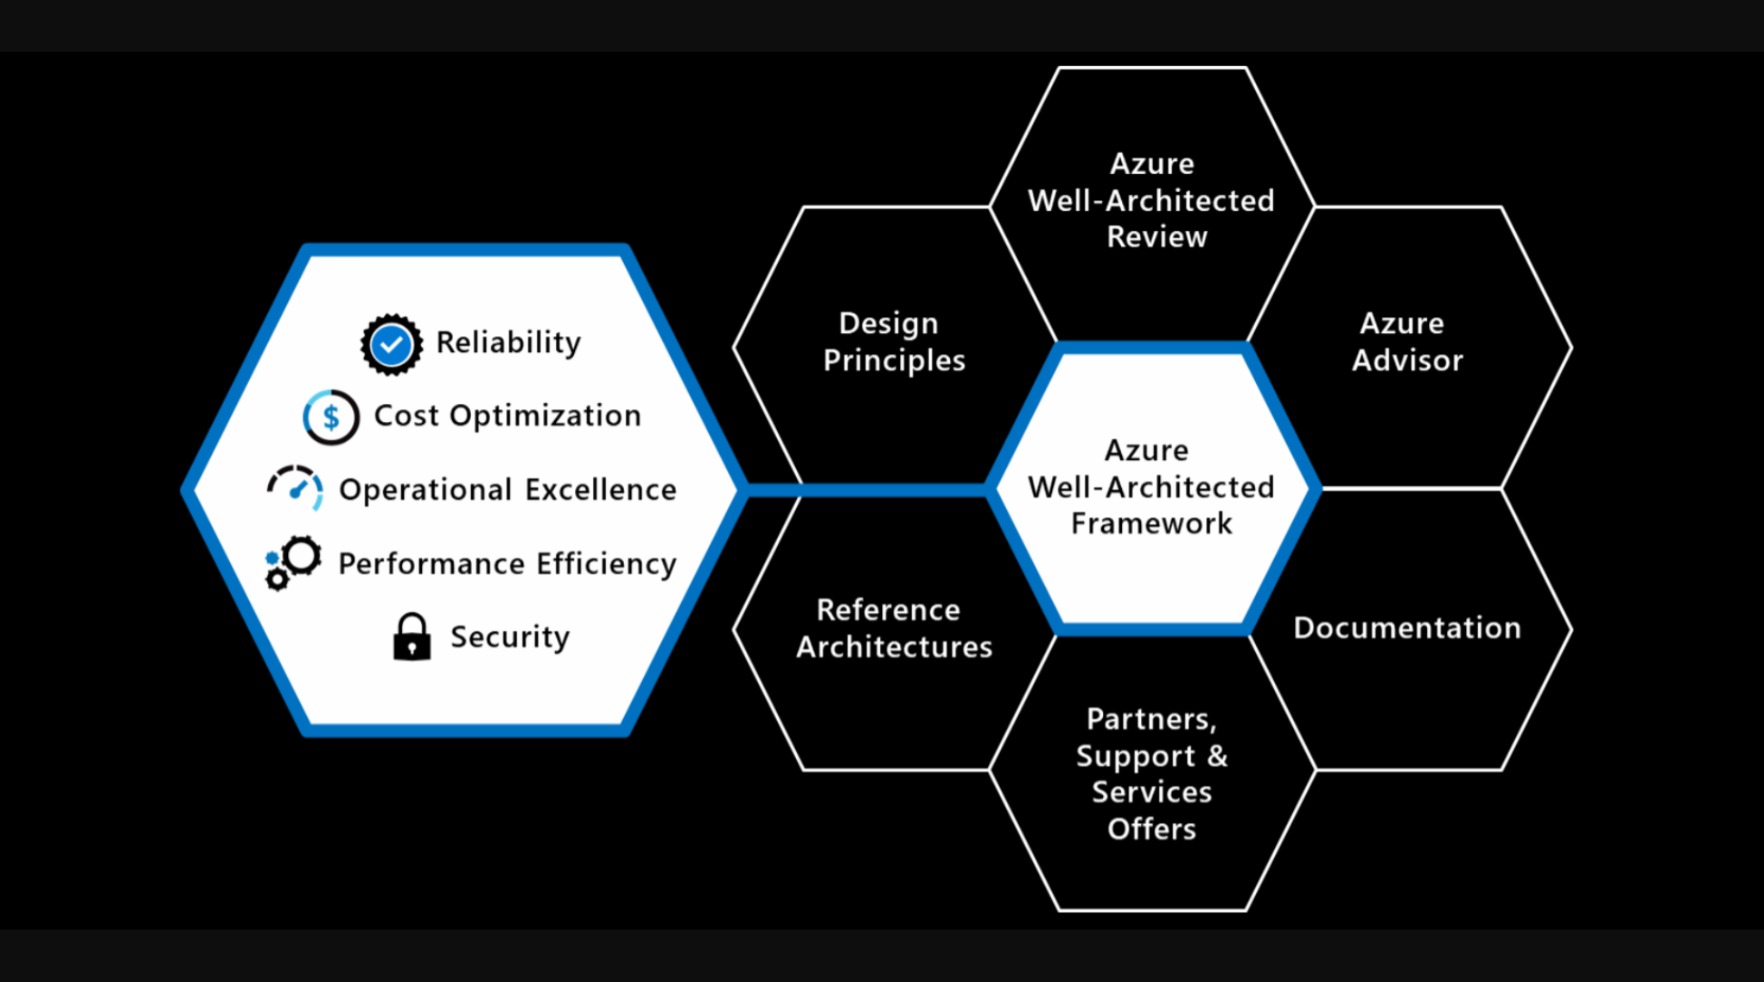 Diagramme du Well-Architected Framework et des éléments de soutien.